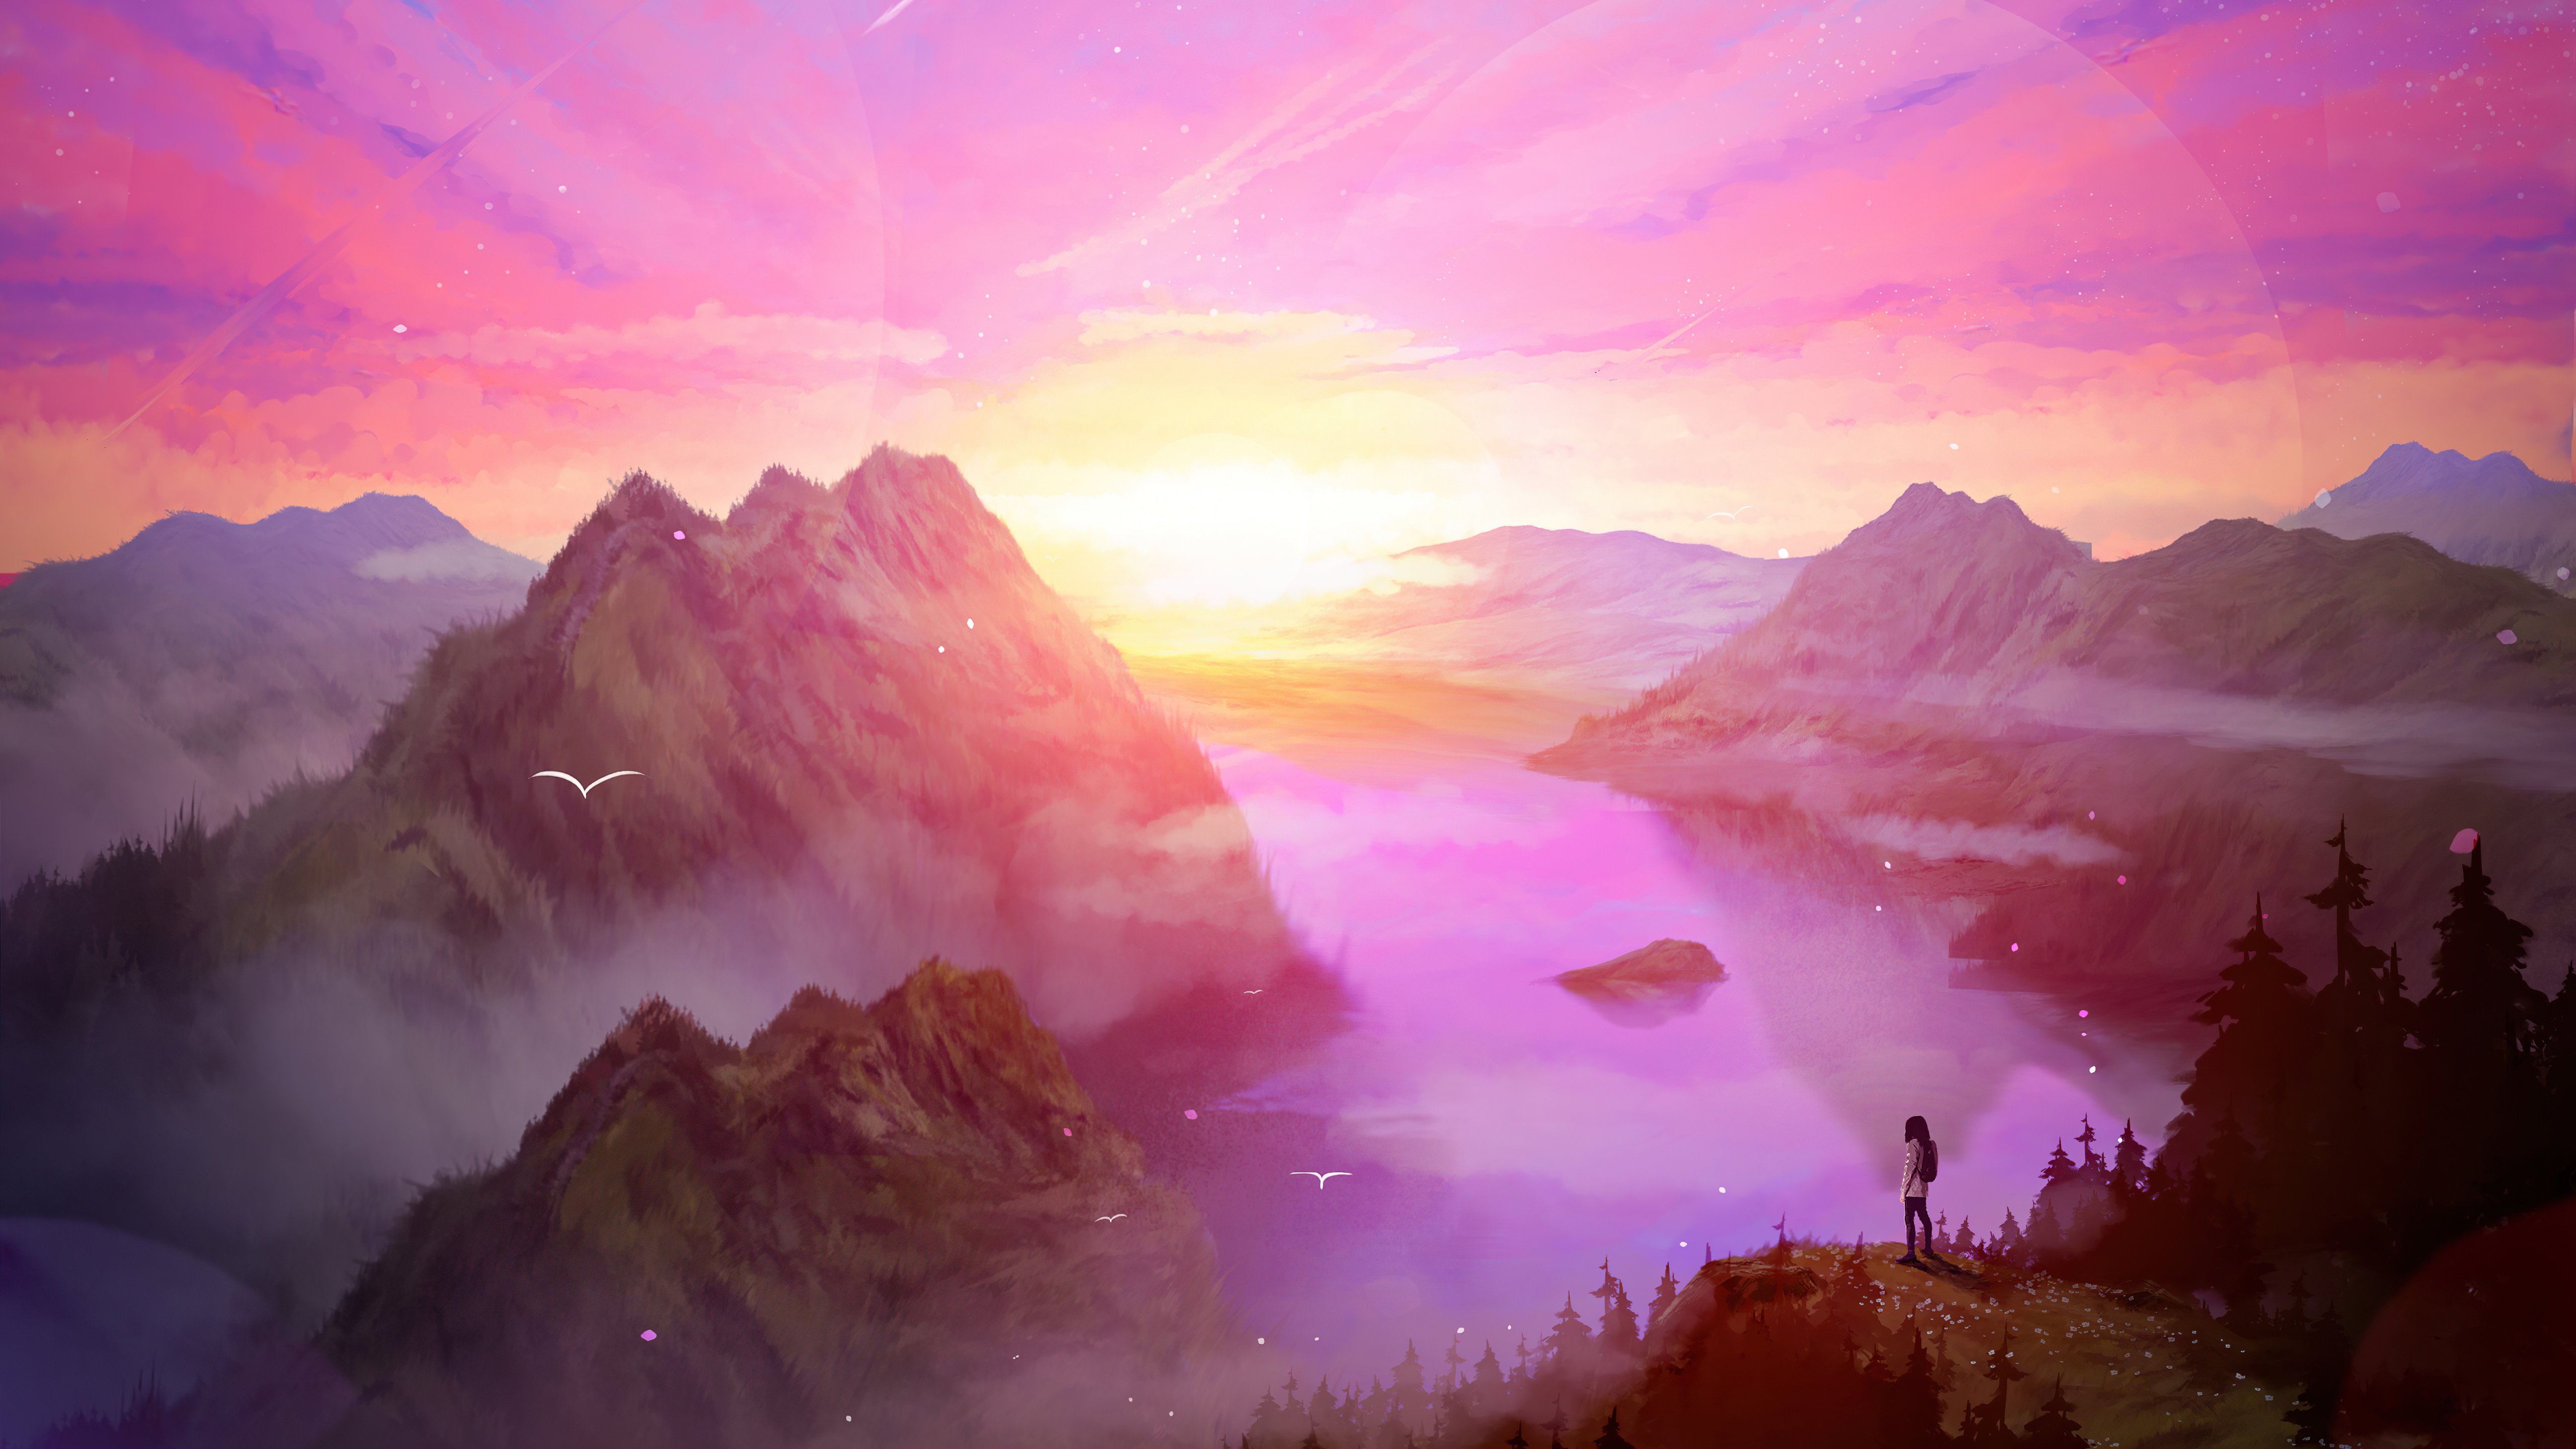 Sunrise in the mountains Digital Art Wallpaper 5k Ultra HD